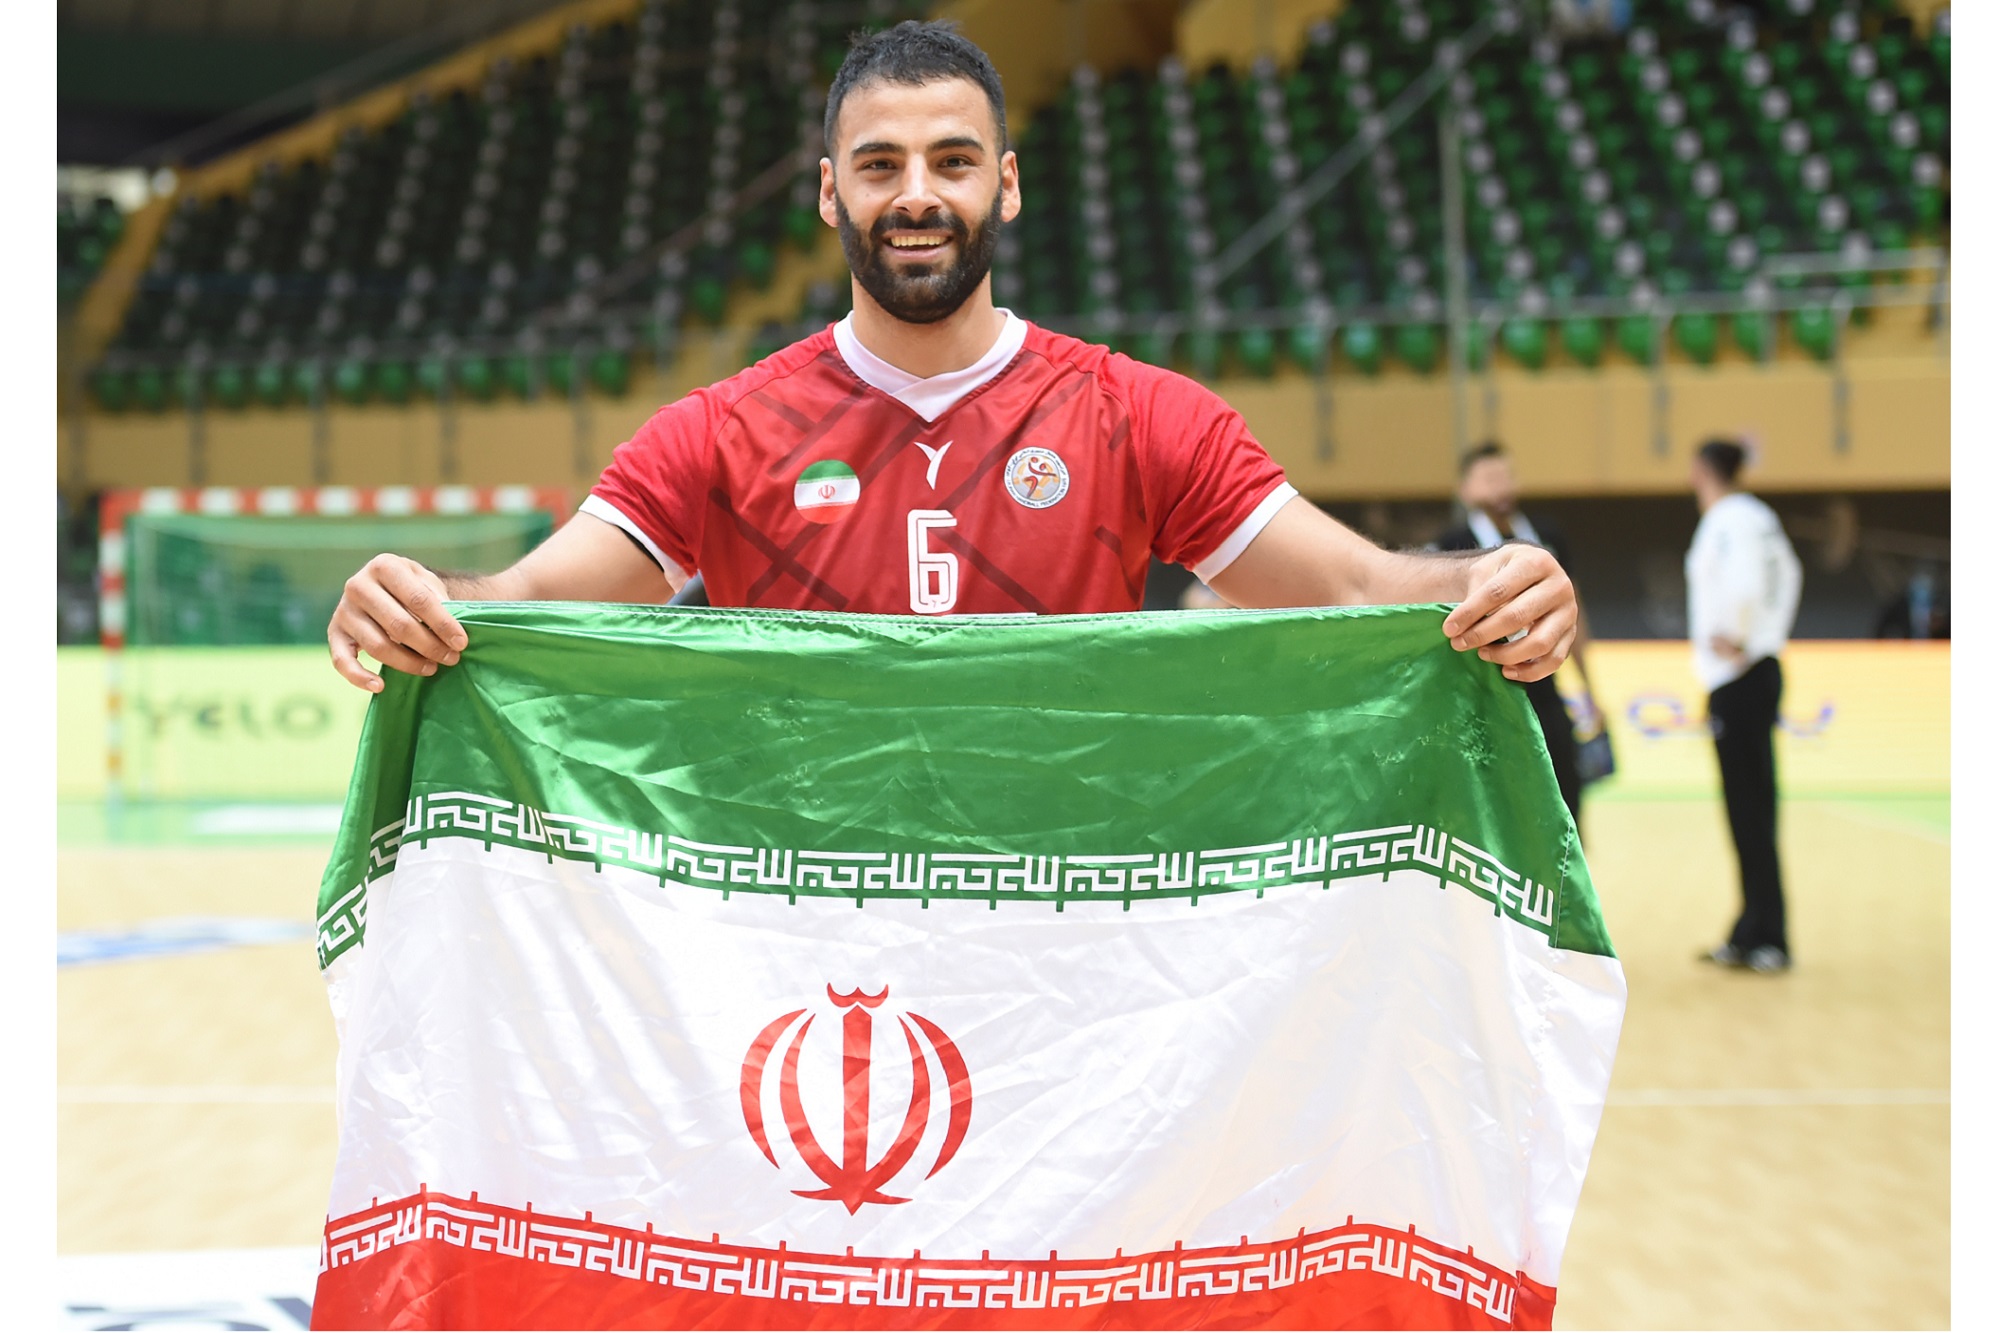 سجاد استکی: قلبم با تیم ملی هندبال است / دوست داشتم در قونیه برای ایران افتخارآفرین باشم